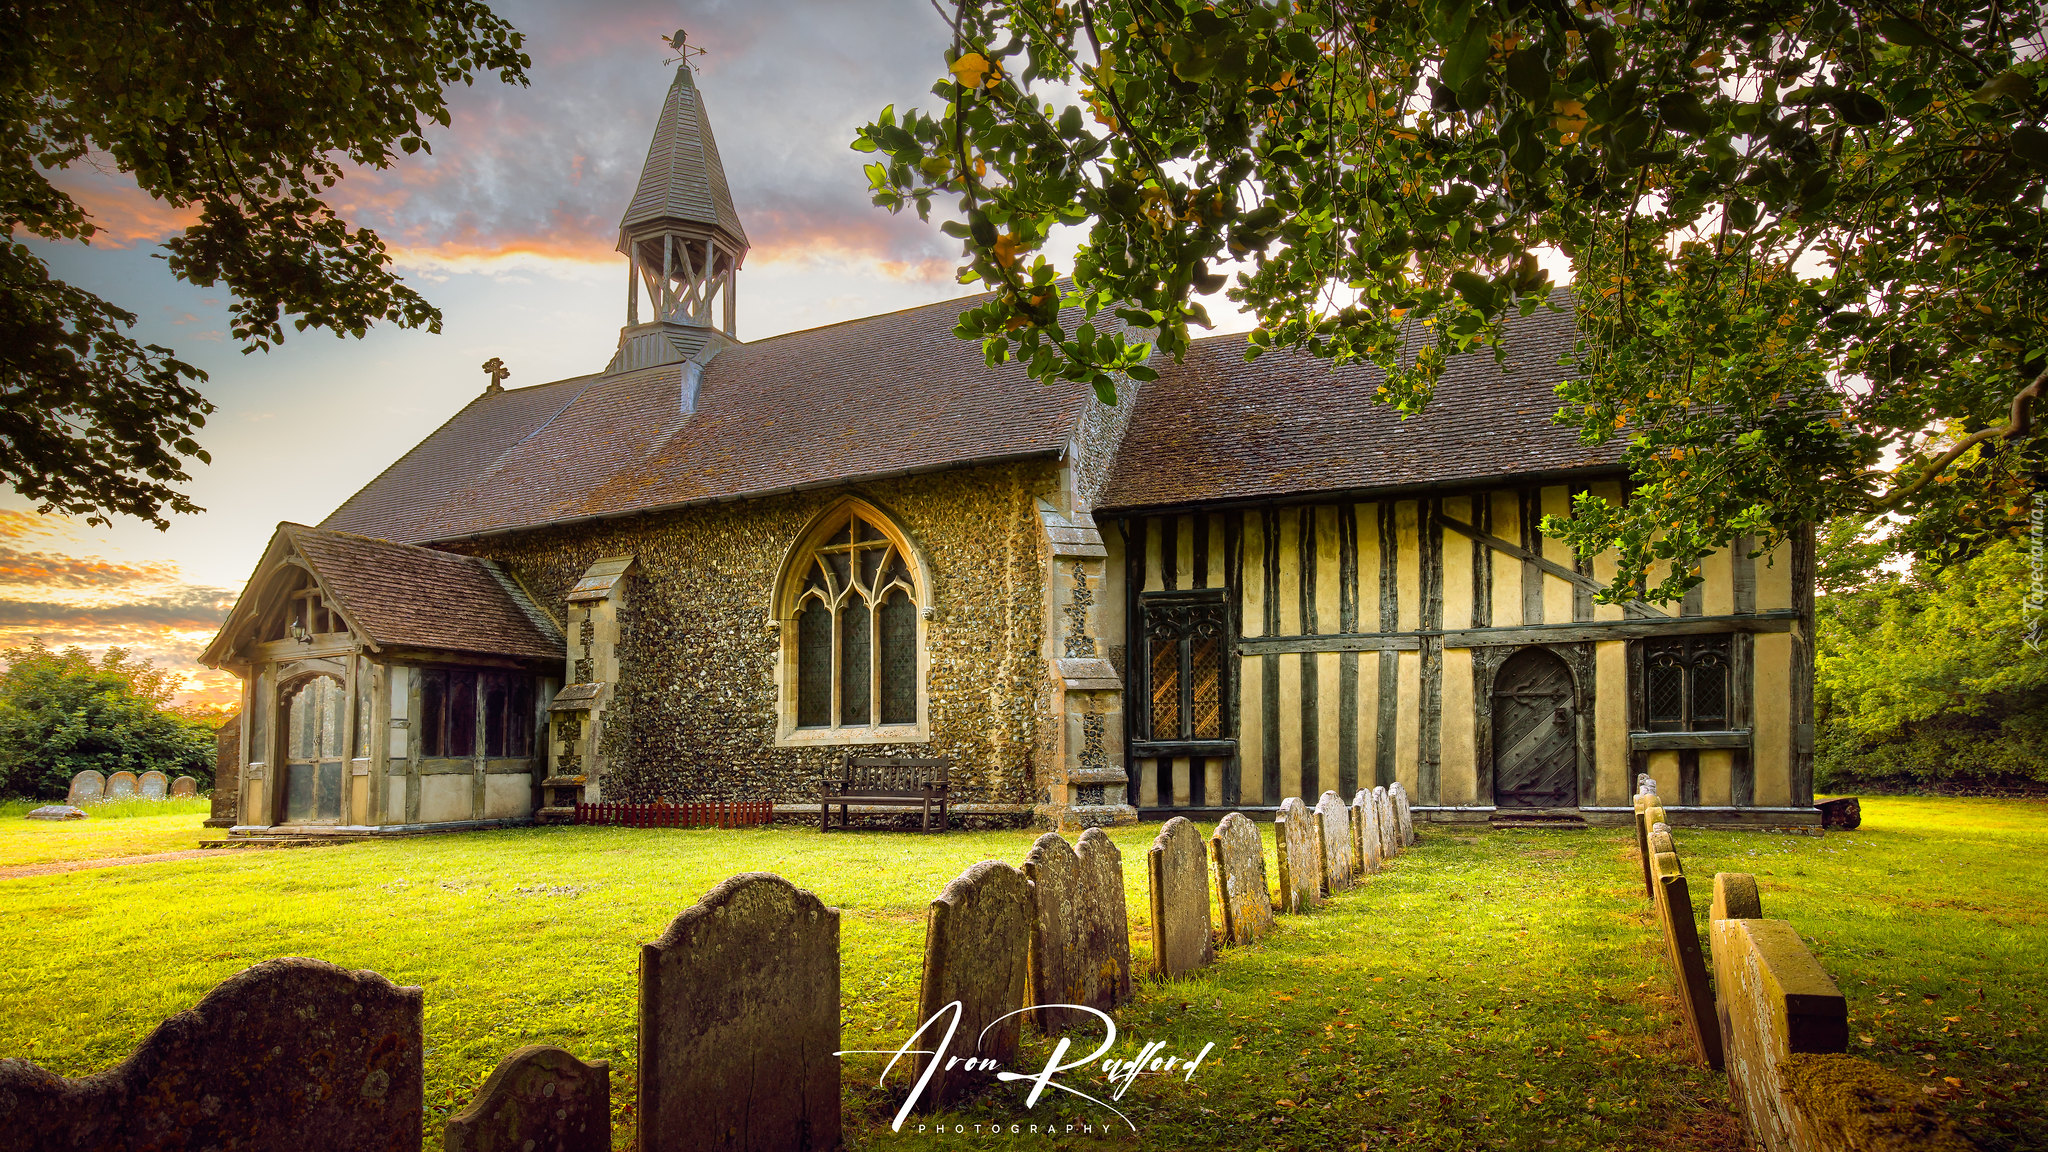 Kościół Wszystkich Świętych, Croffield, Suffolk, Anglia